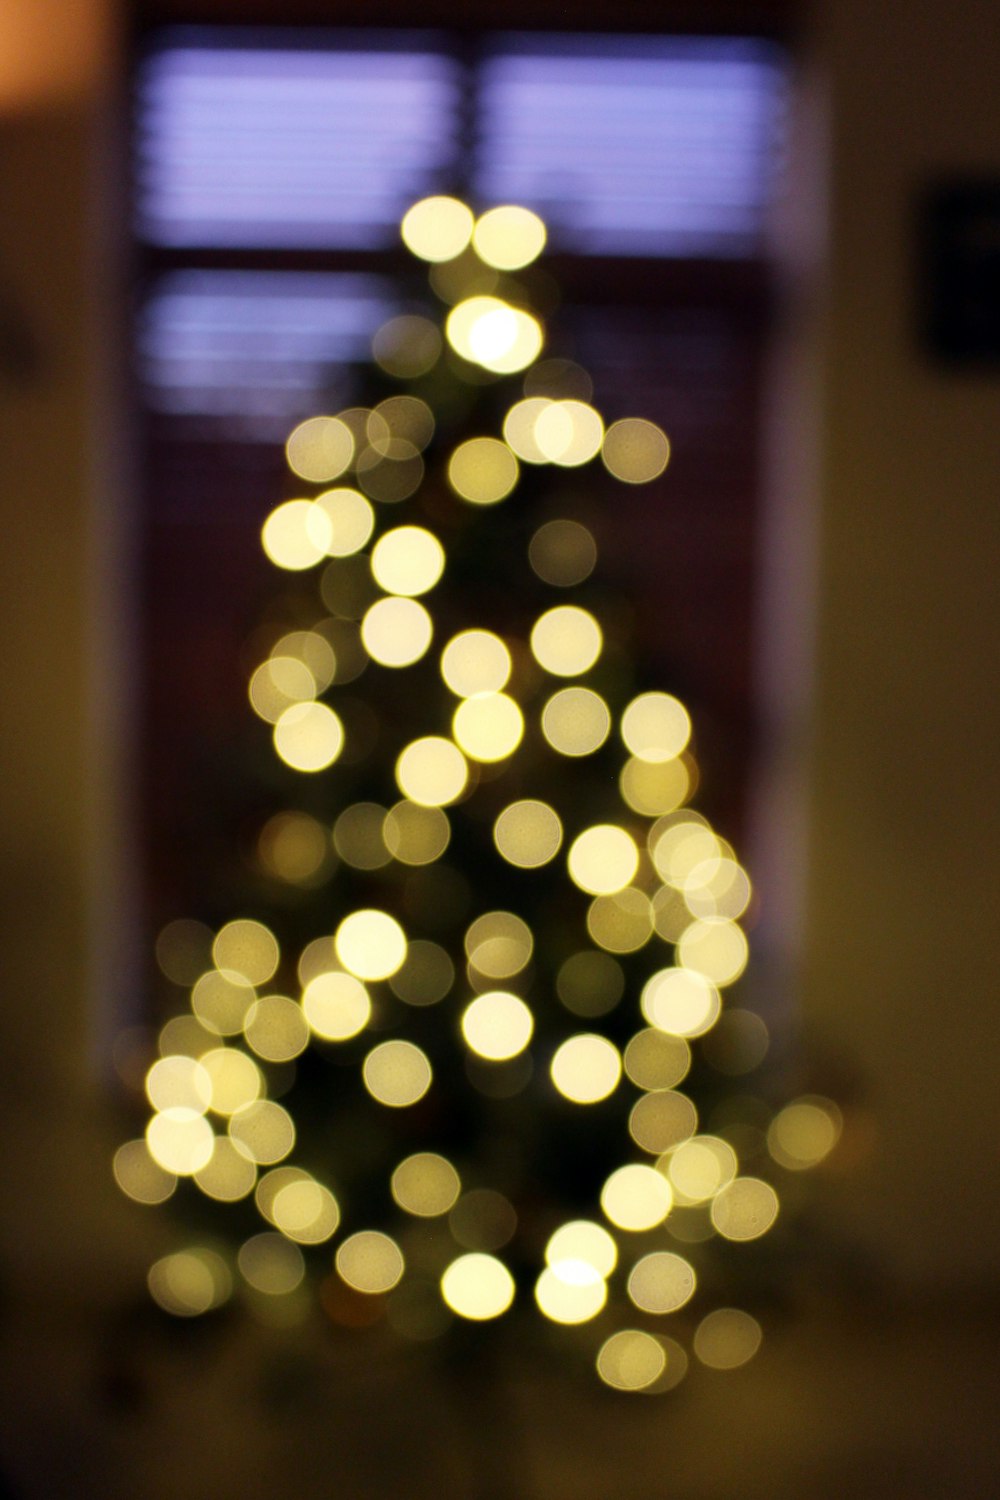 bokeh photography of Christmas tree